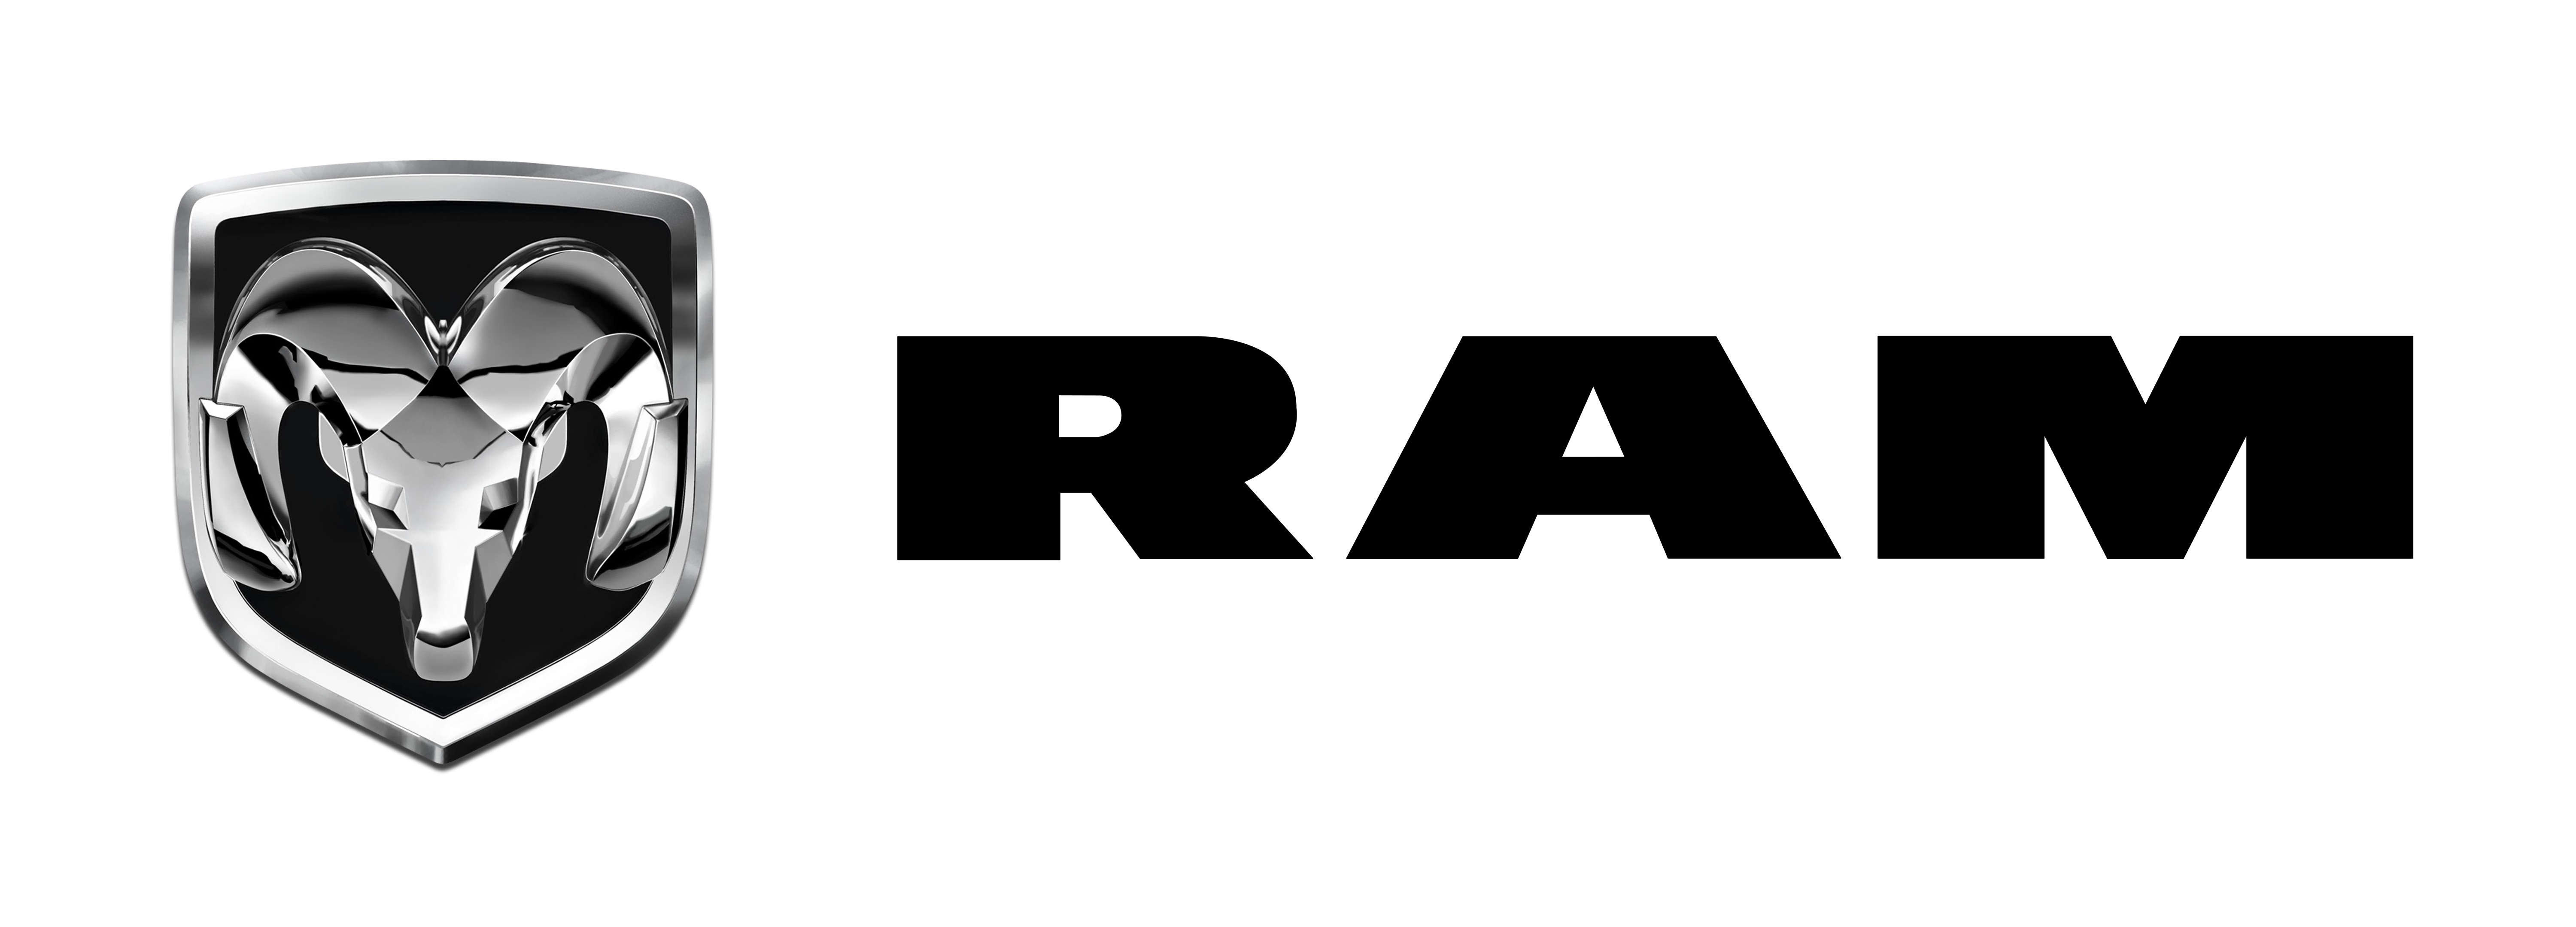 Ram Logo Vector at GetDrawings.com.